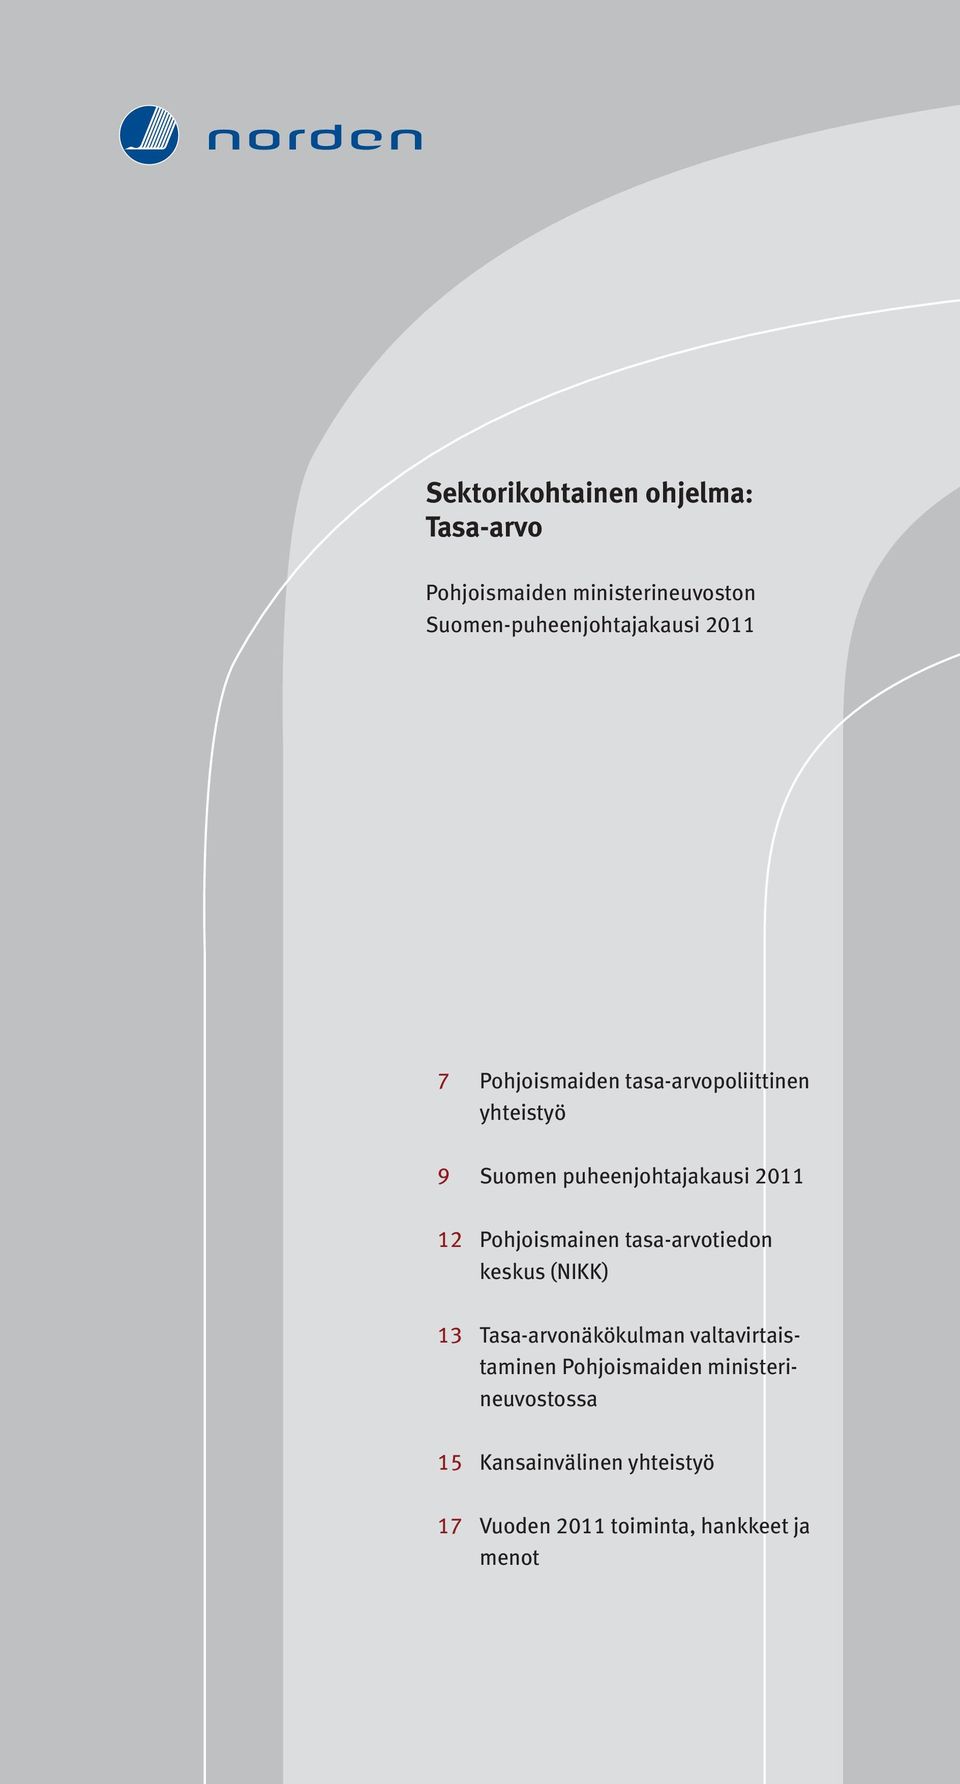 puheenjohtajakausi 2011 12 Pohjoismainen tasa-arvotiedon keskus (NIKK) 13 Tasa-arvonäkökulman